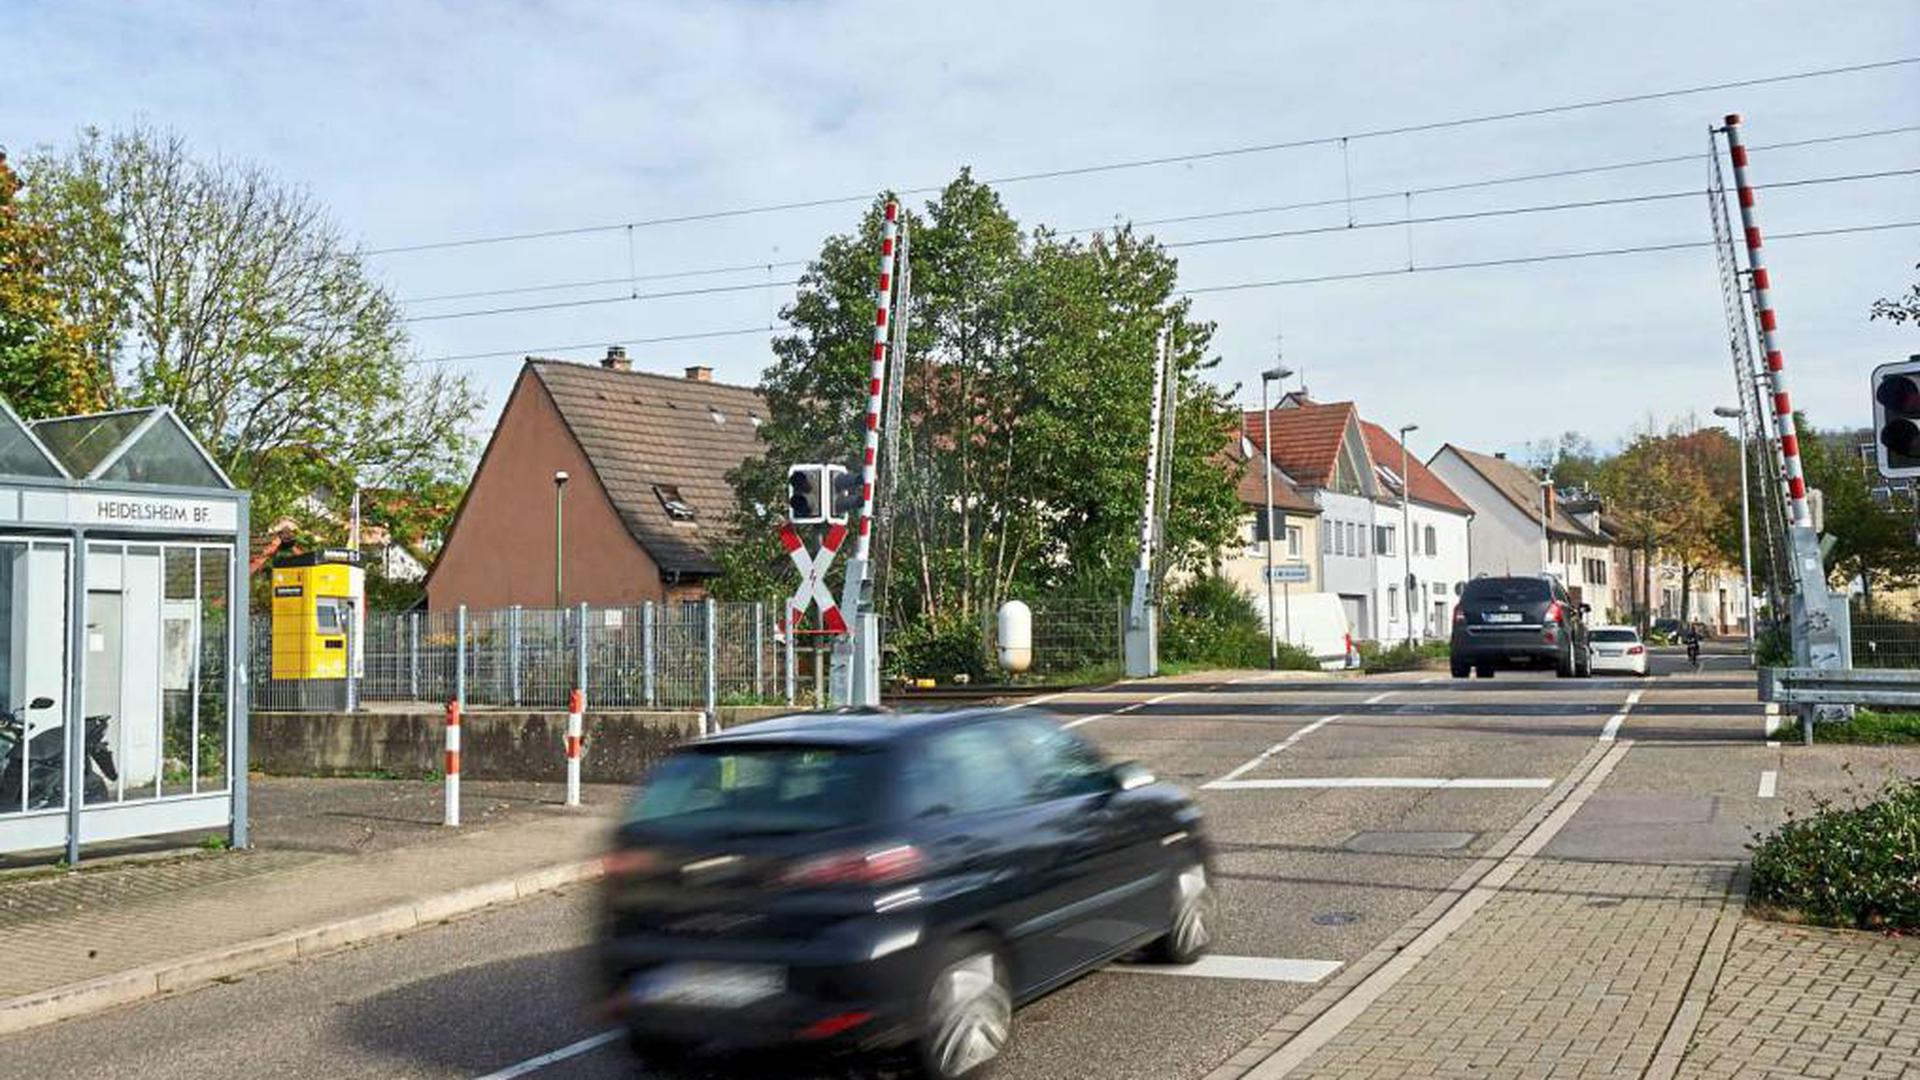 Offene Schranken am Bahnübergang in Heidelsheim wird es im nächsten Jahr nur selten zu sehen geben. Während der Sanierung der Schnellbahnstrecke soll er bis zu 56 Minuten in der Stunde geschlossen bleiben. Umleitungen sind in Planung.